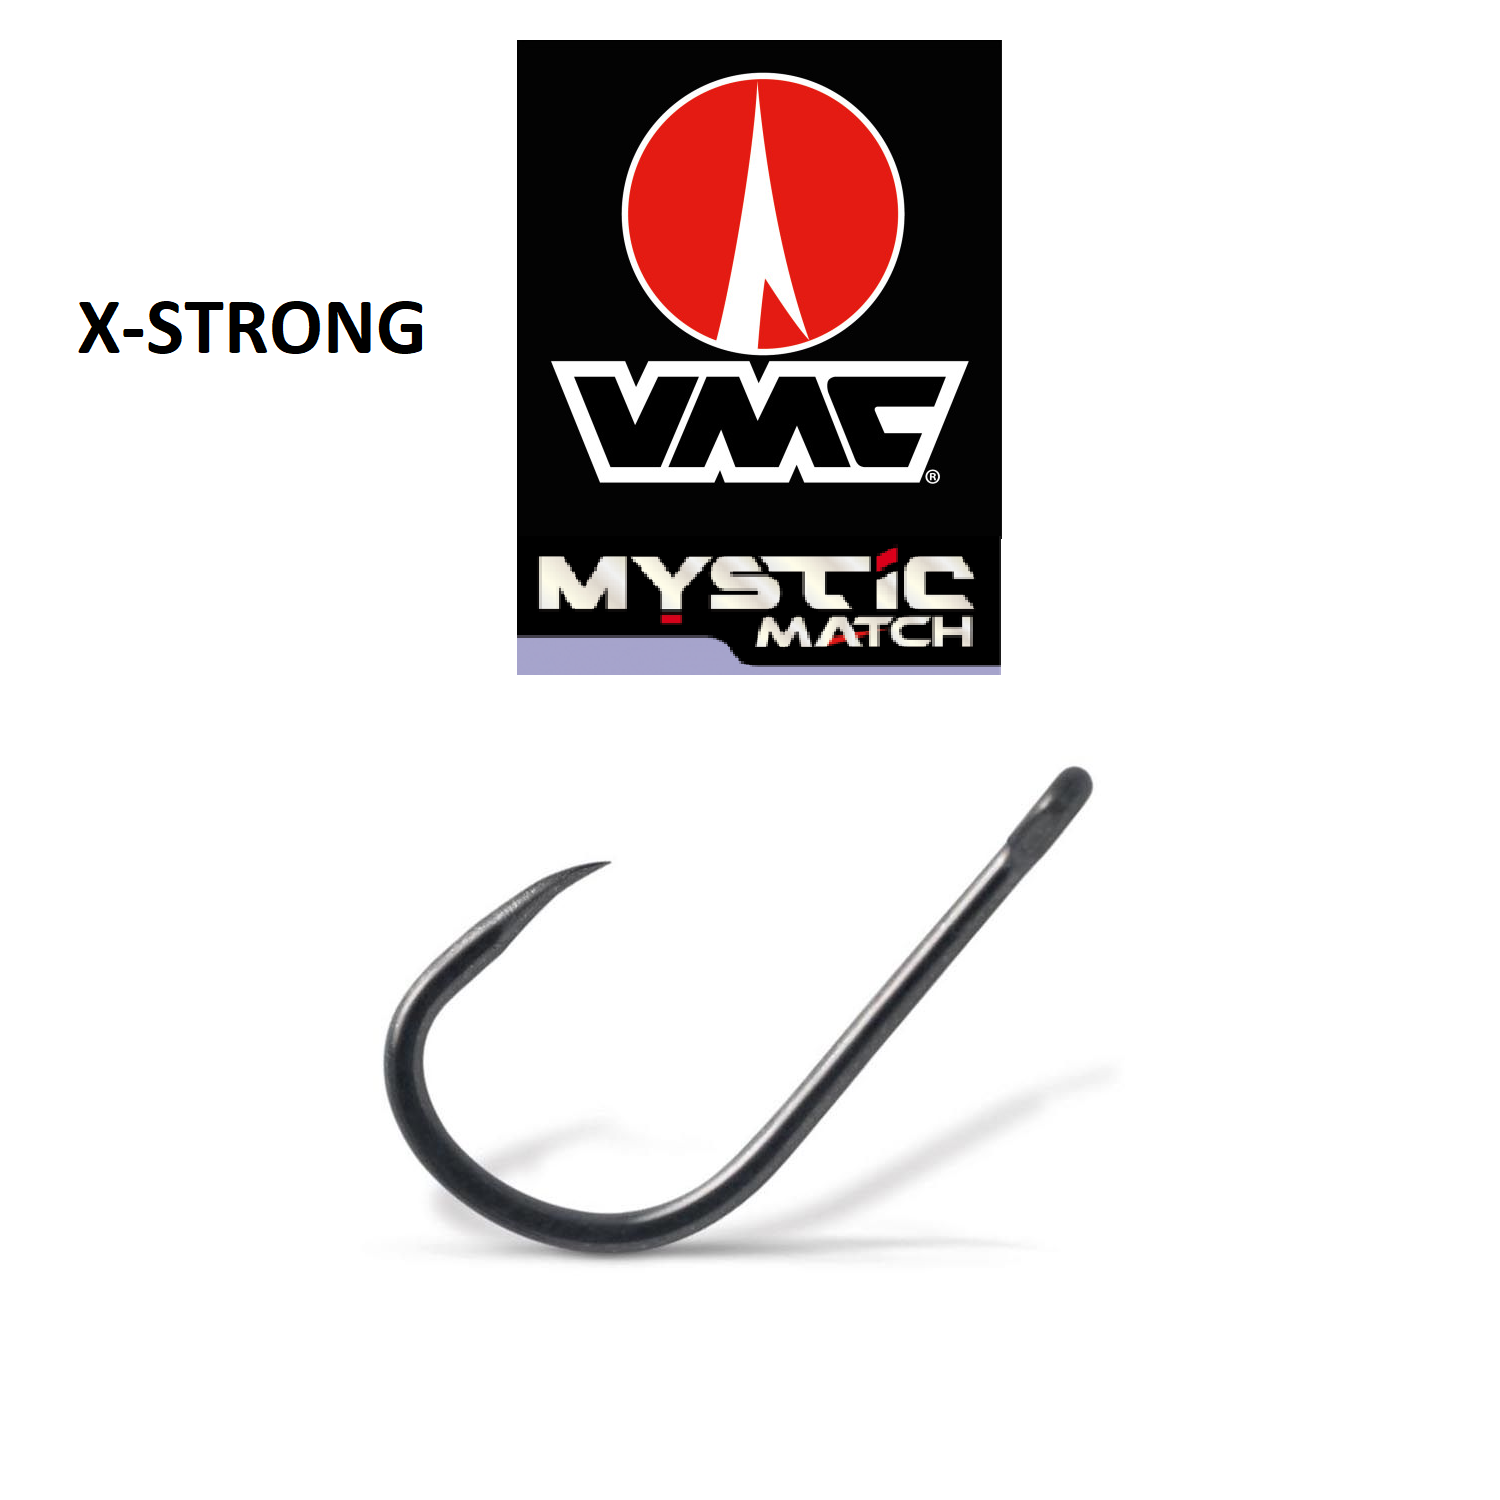 VMC H MYSTIC MATCH 7018 BNT MATCH/FEEDER X-STRONG SZAKÁLL NÉLKÜLI HORGOK